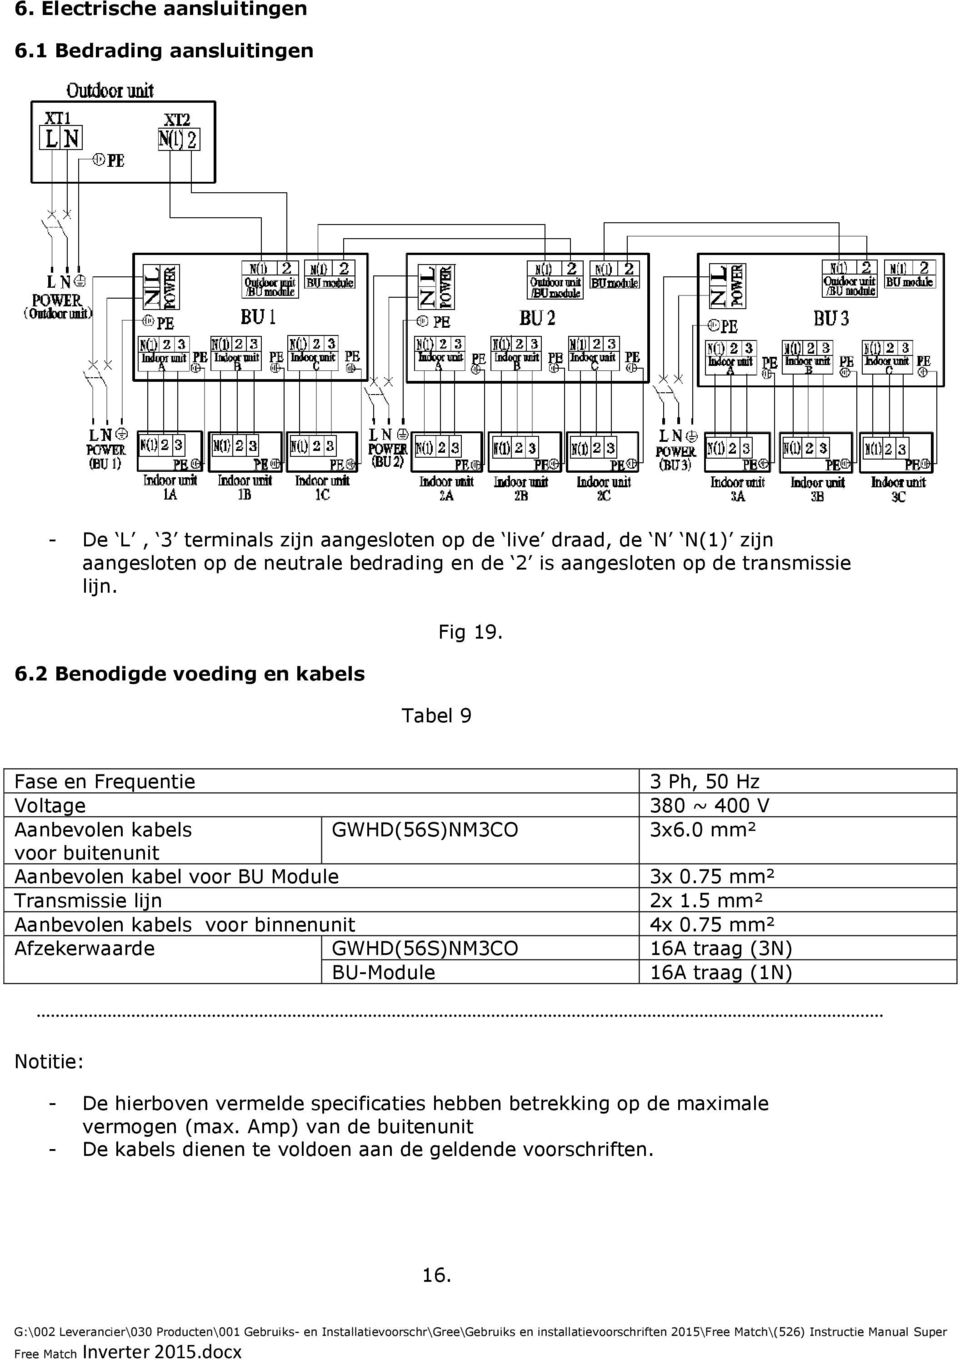 2 Benodigde voeding en kabels Fig 19. Tabel 9 Fase en Frequentie 3 Ph, 50 Hz Voltage 380 ~ 400 V Aanbevolen kabels GWHD(56S)NM3CO 3x6.